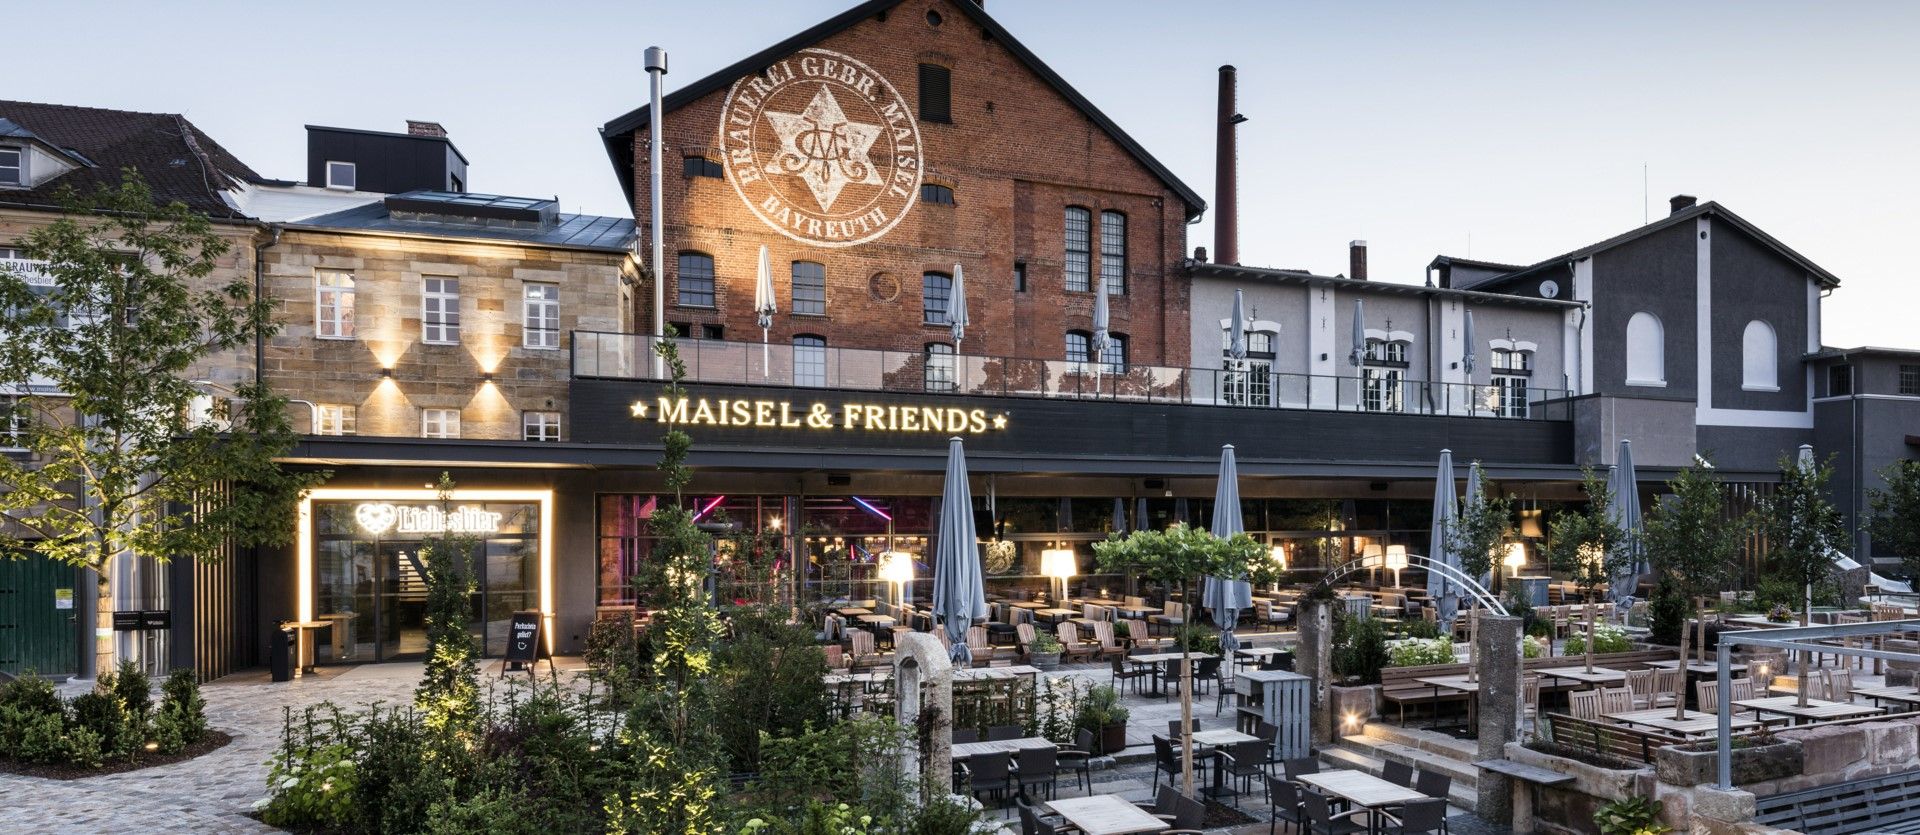 Die Maisel & Friends Bier-Erlebniswelt in Bayreuth lädt ein